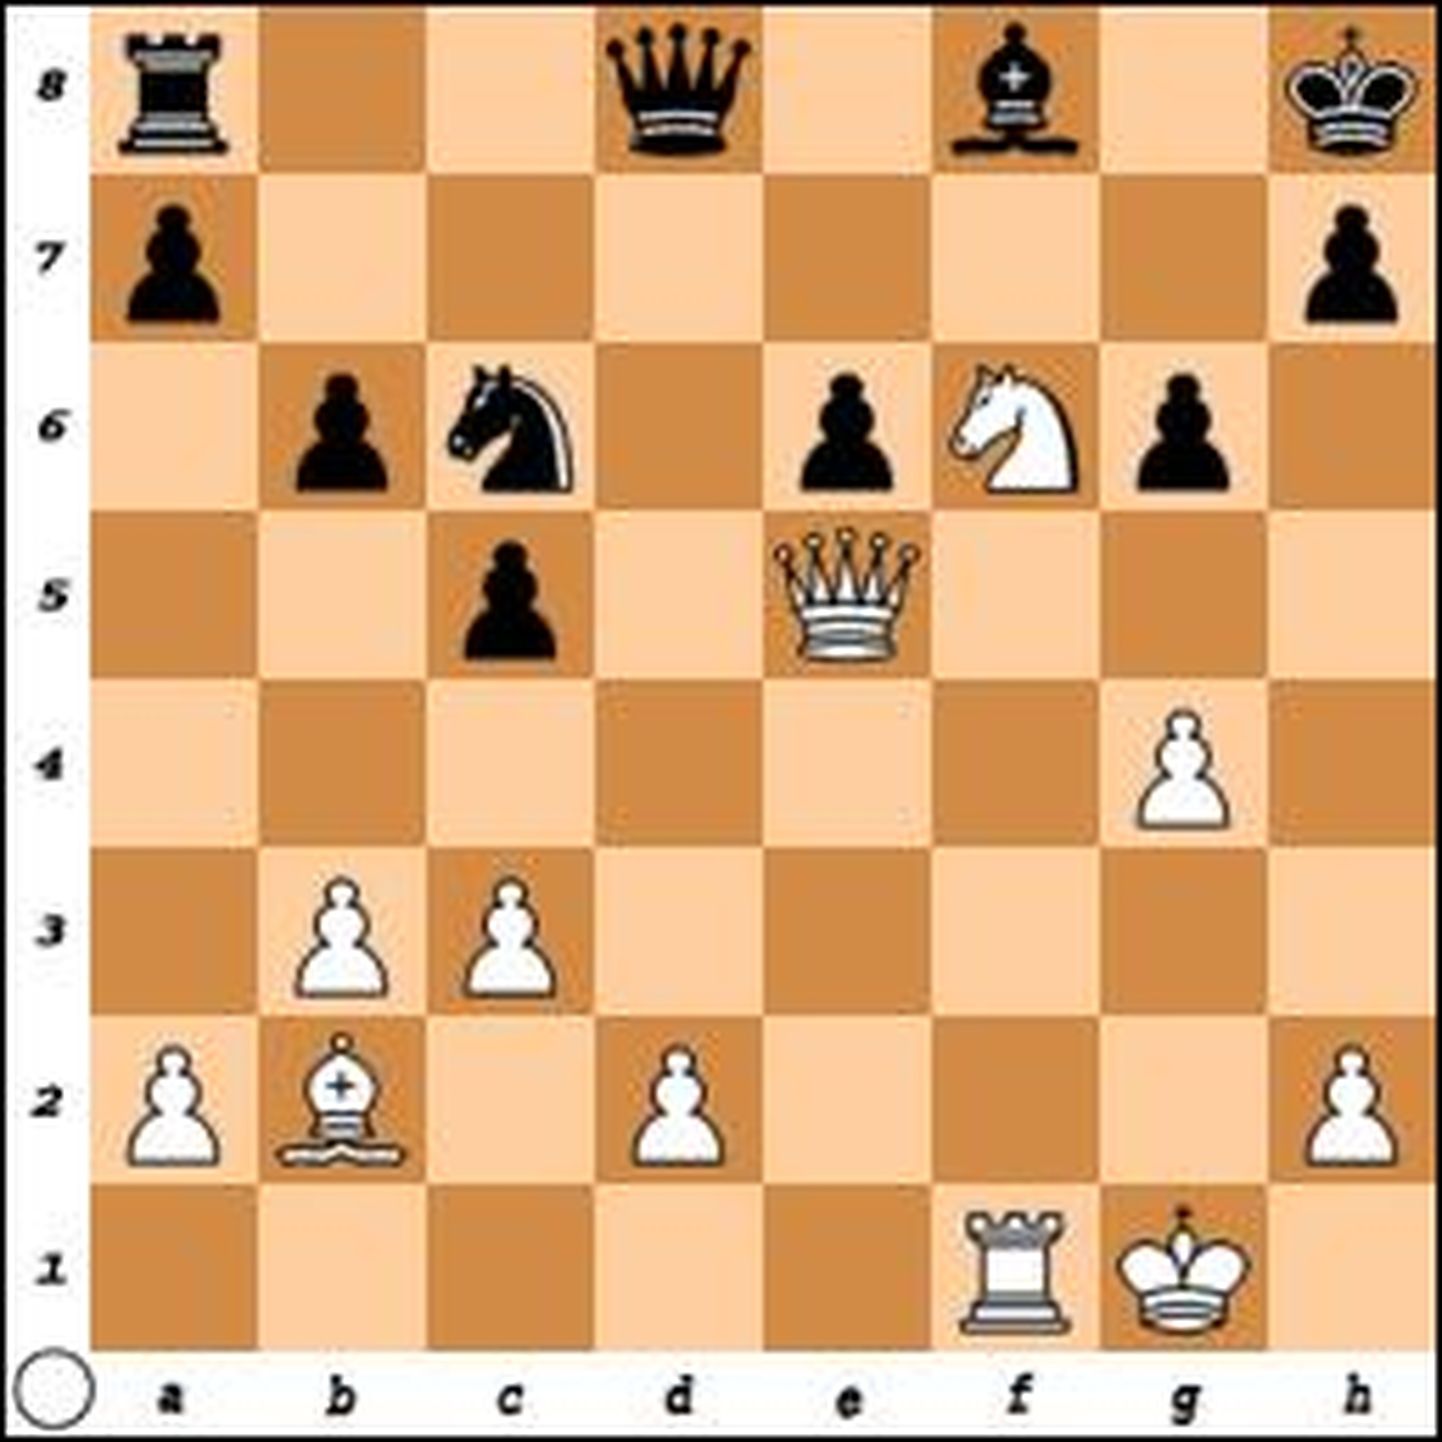 Magnus Carlsen – Viswanathan Anand, 2014. Valge võidab.